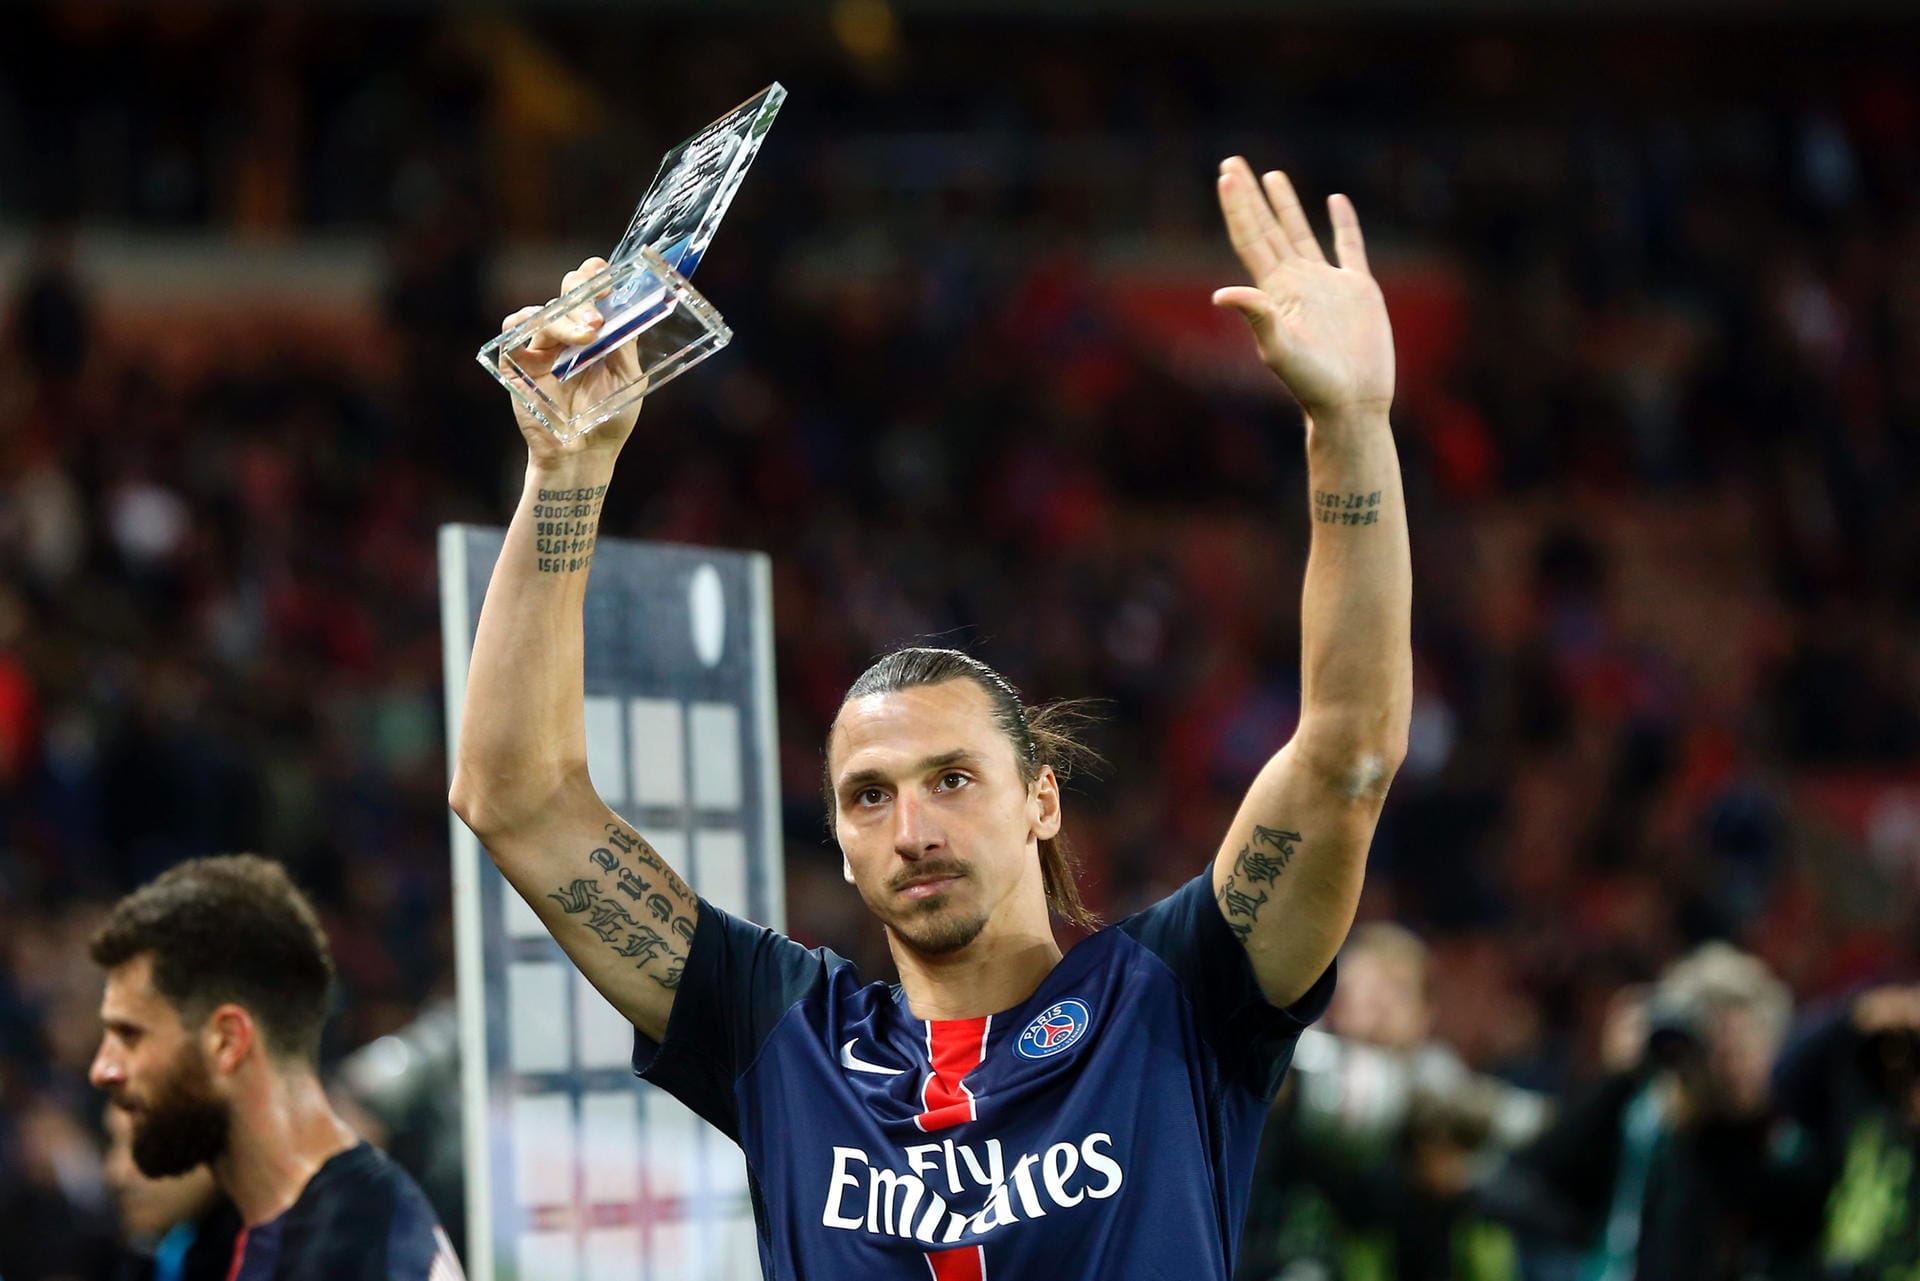 Auch Zlatan Ibrahimovic hat unter seinen vielen Tattoos eines im Maori-Stil am rechten Arm - es soll ihn und seine Familie beschützen.